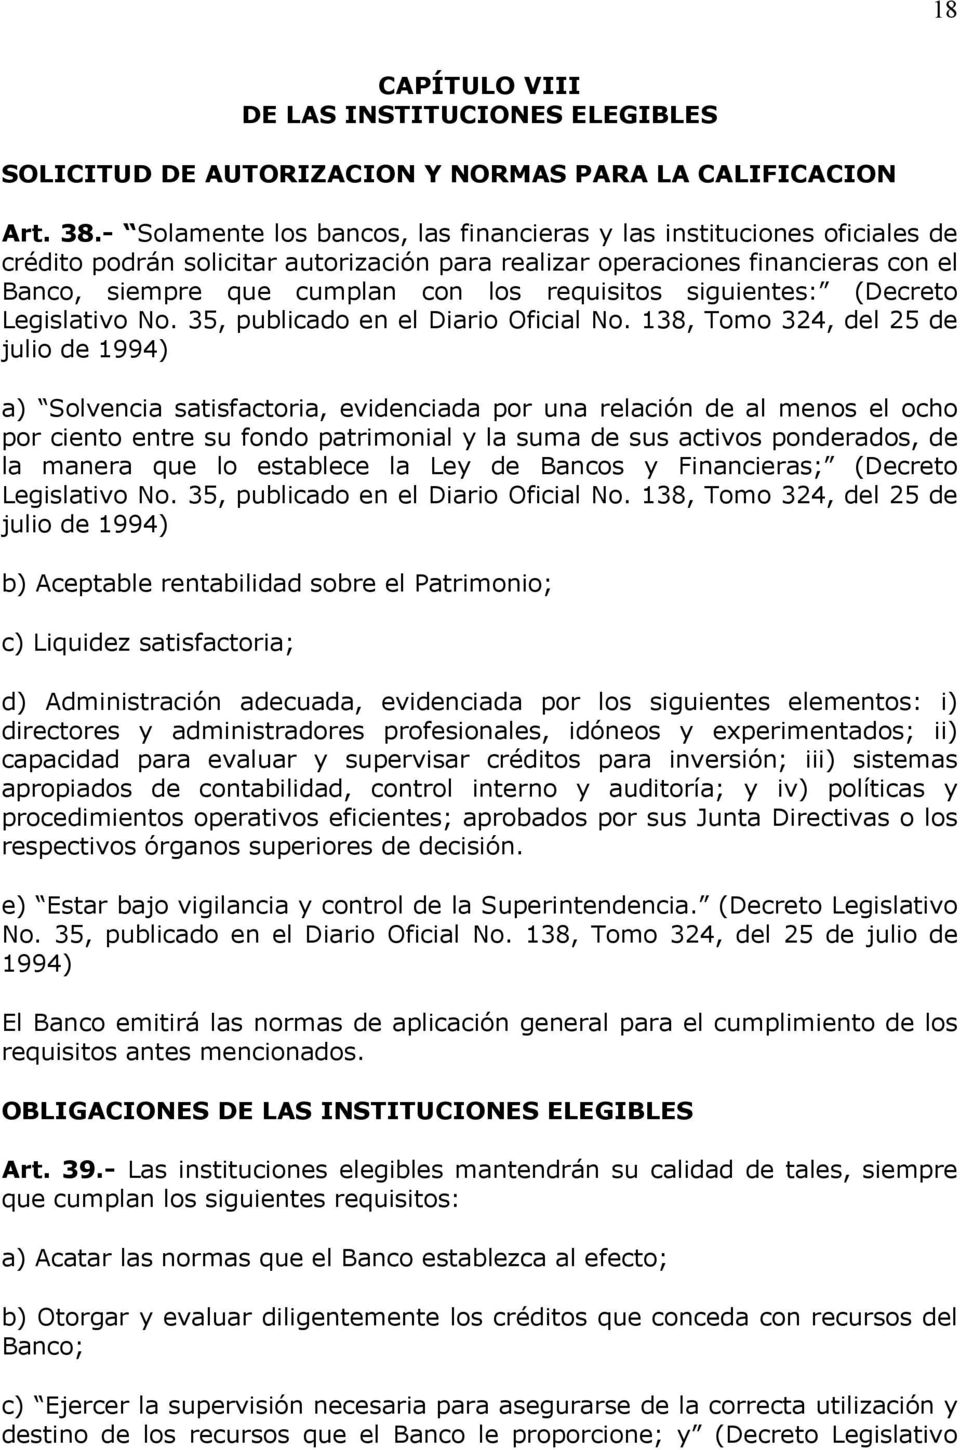 requisitos siguientes: (Decreto Legislativo No. 35, publicado en el Diario Oficial No.